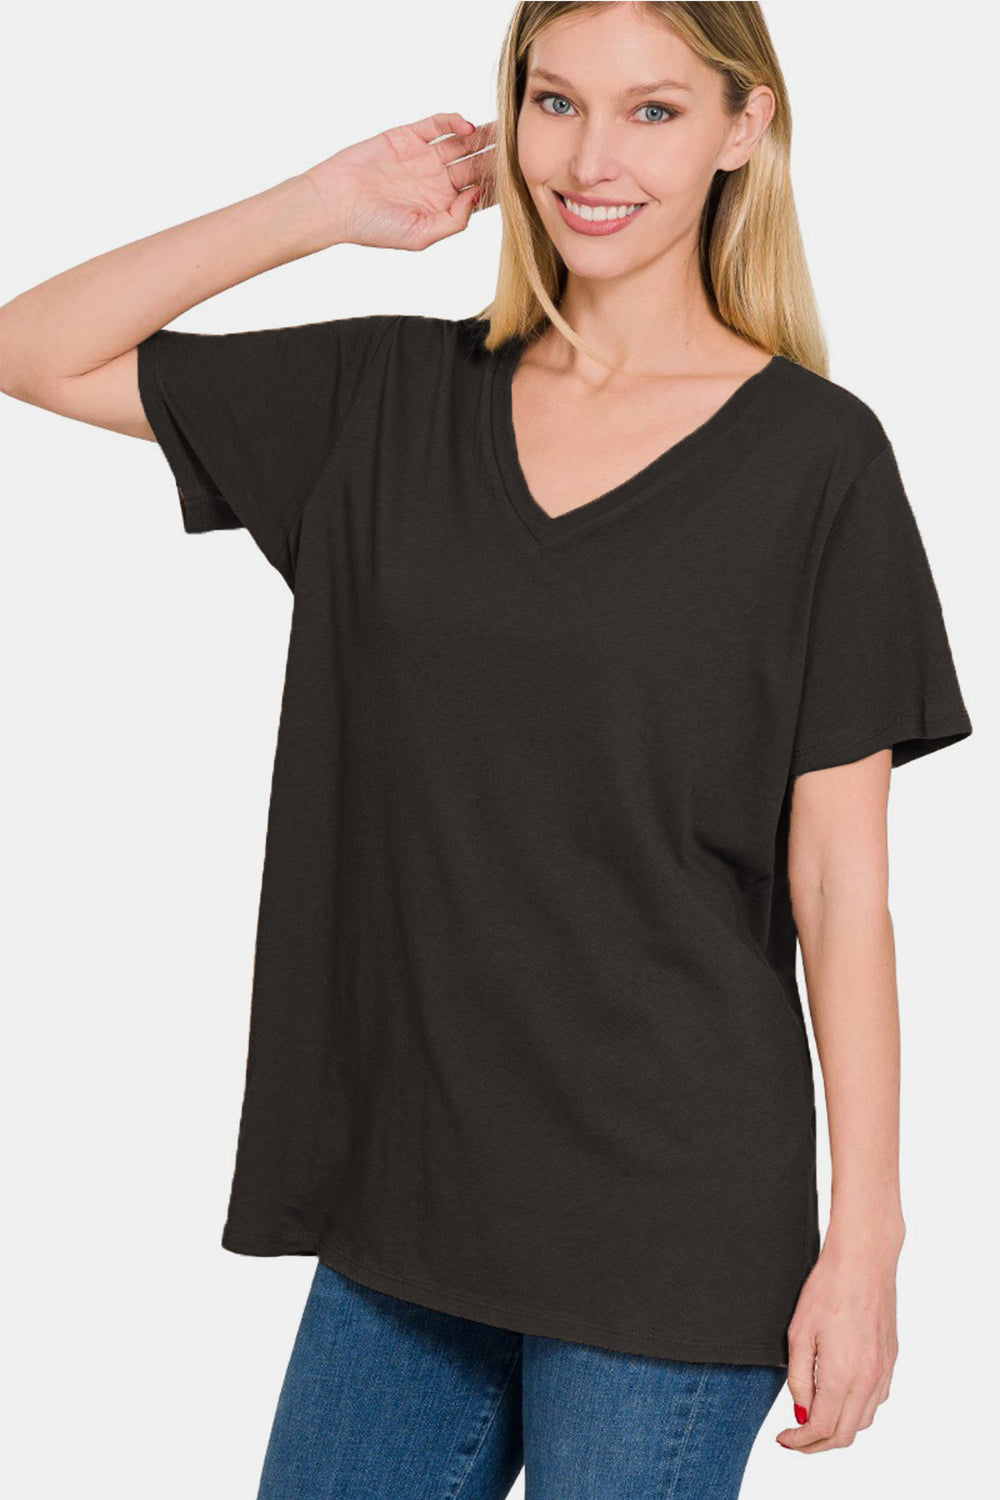 Zenana T-Shirt mit V-Ausschnitt und kurzen Ärmeln in voller Größe